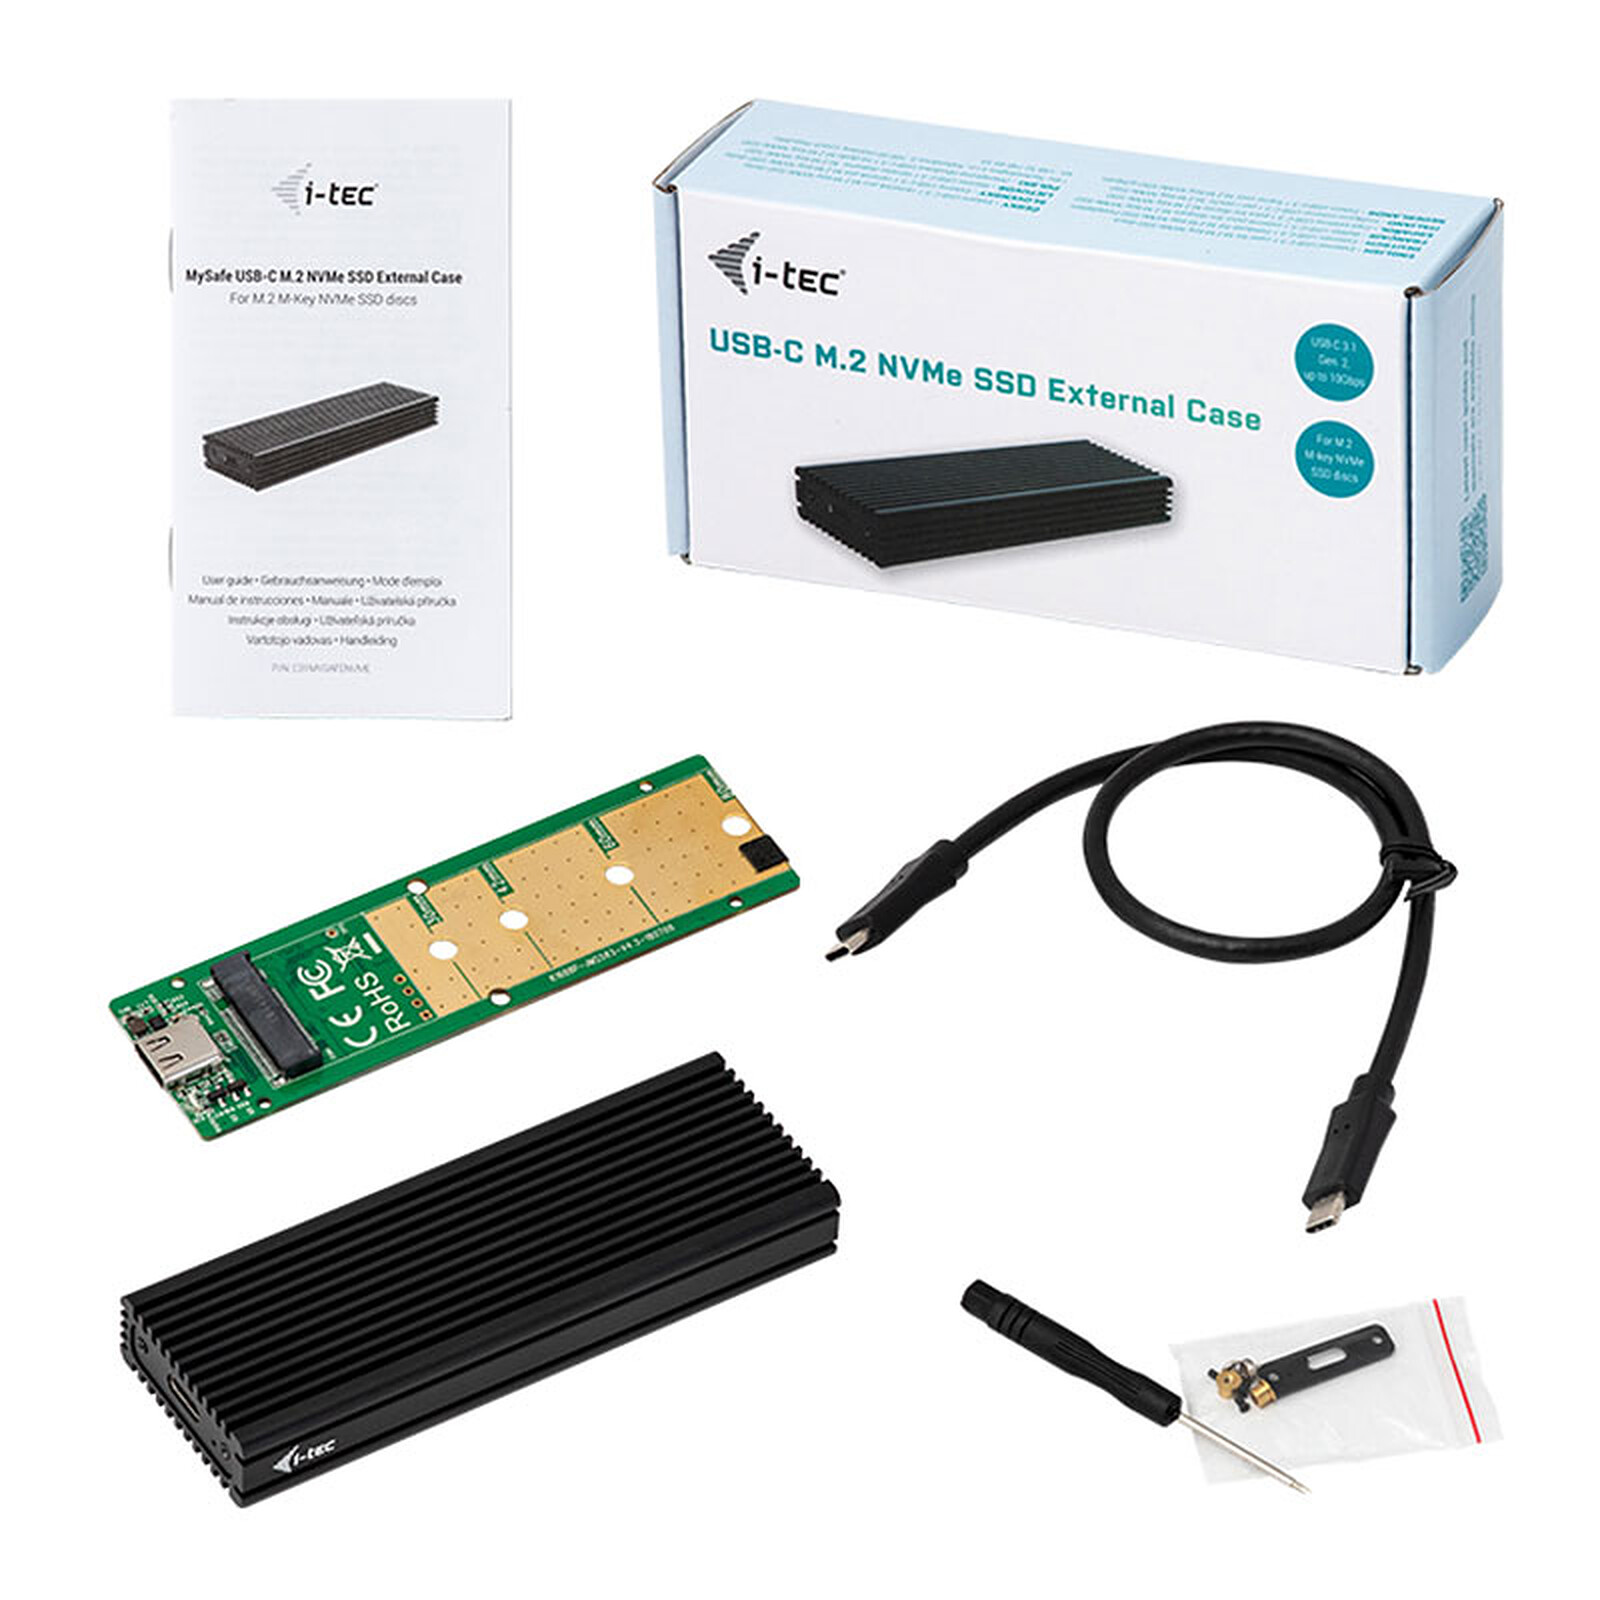 Boitier externe Advance STEEL DISK SSD/HD 2.5 SATA - USB 3.0 Noir Alu